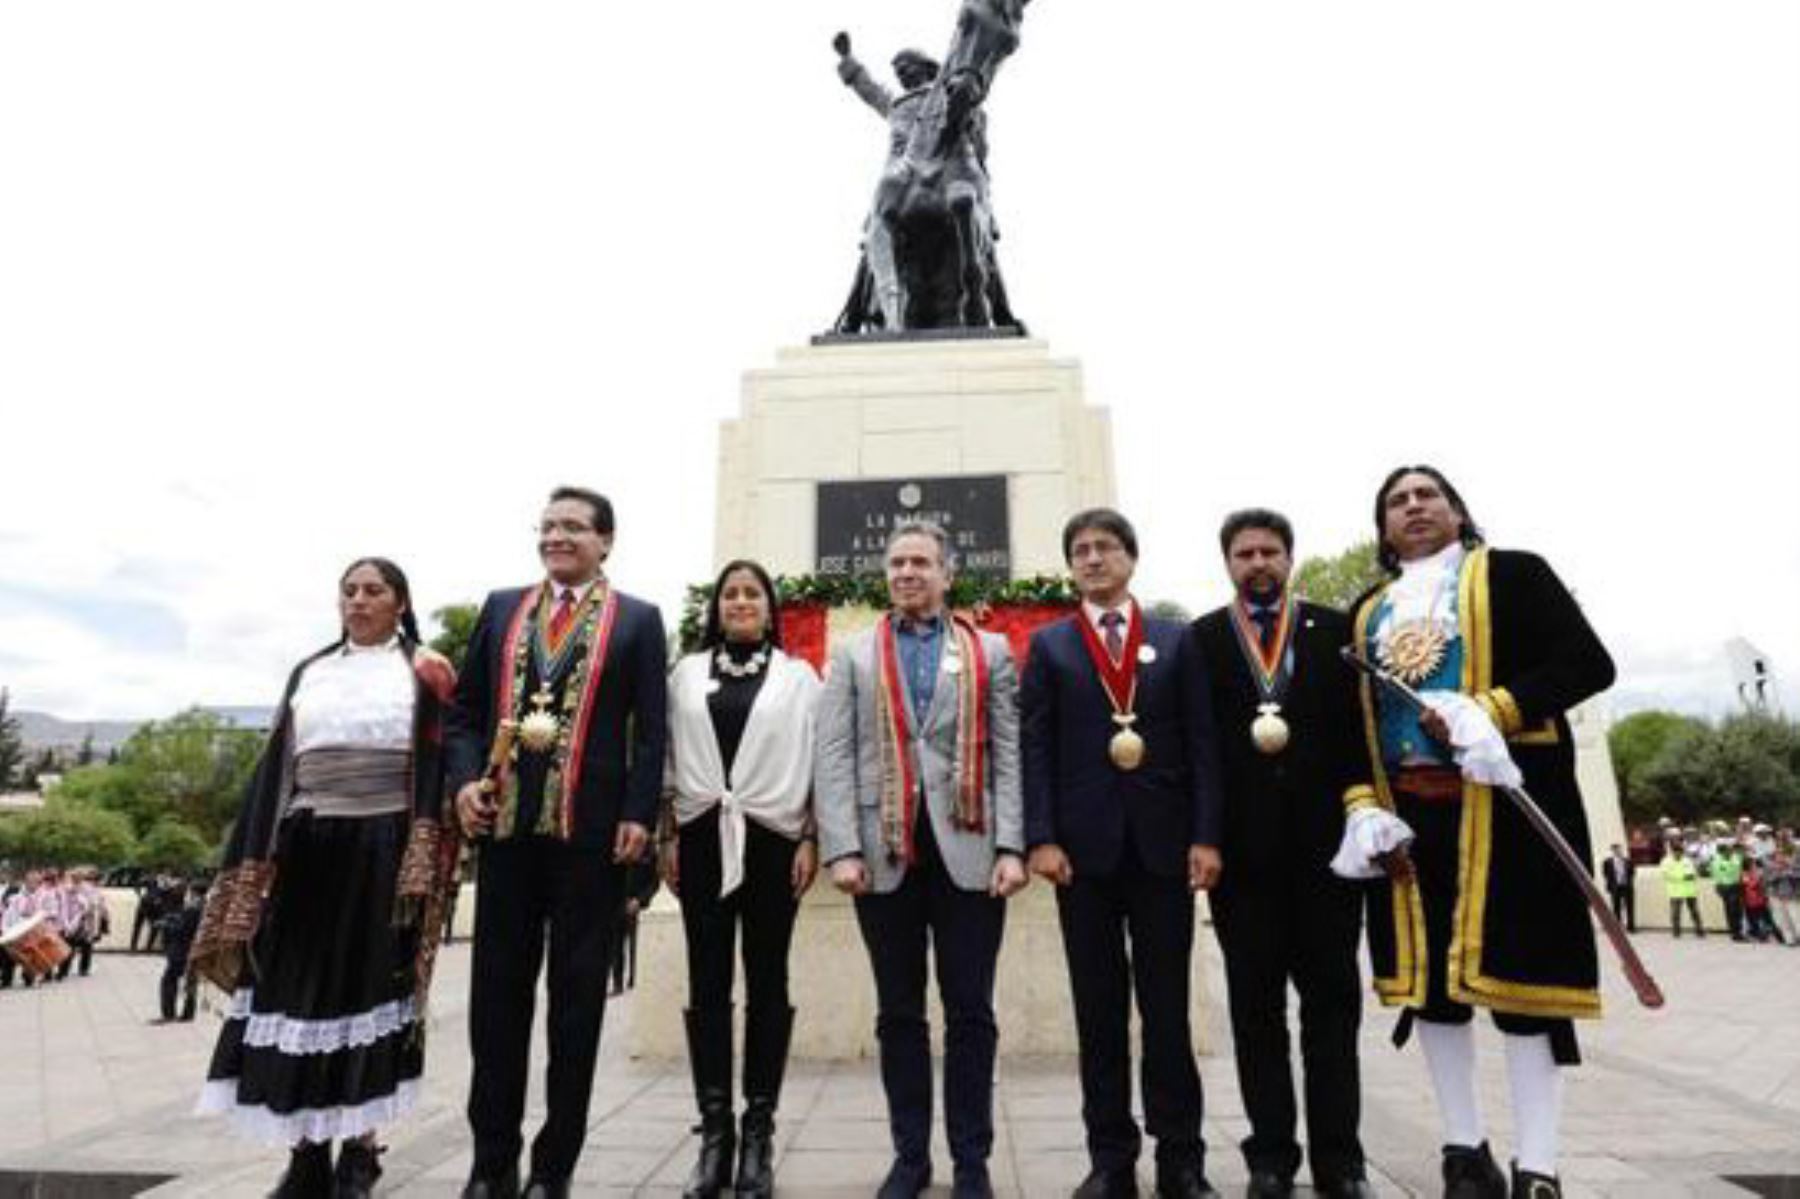 El ministro de Cultura, Francesco Petrozzi, participó en Cusco en la ceremonia de conmemoración por los 239 años de la rebelión de Túpac Amaru II y Micaela Bastidas.